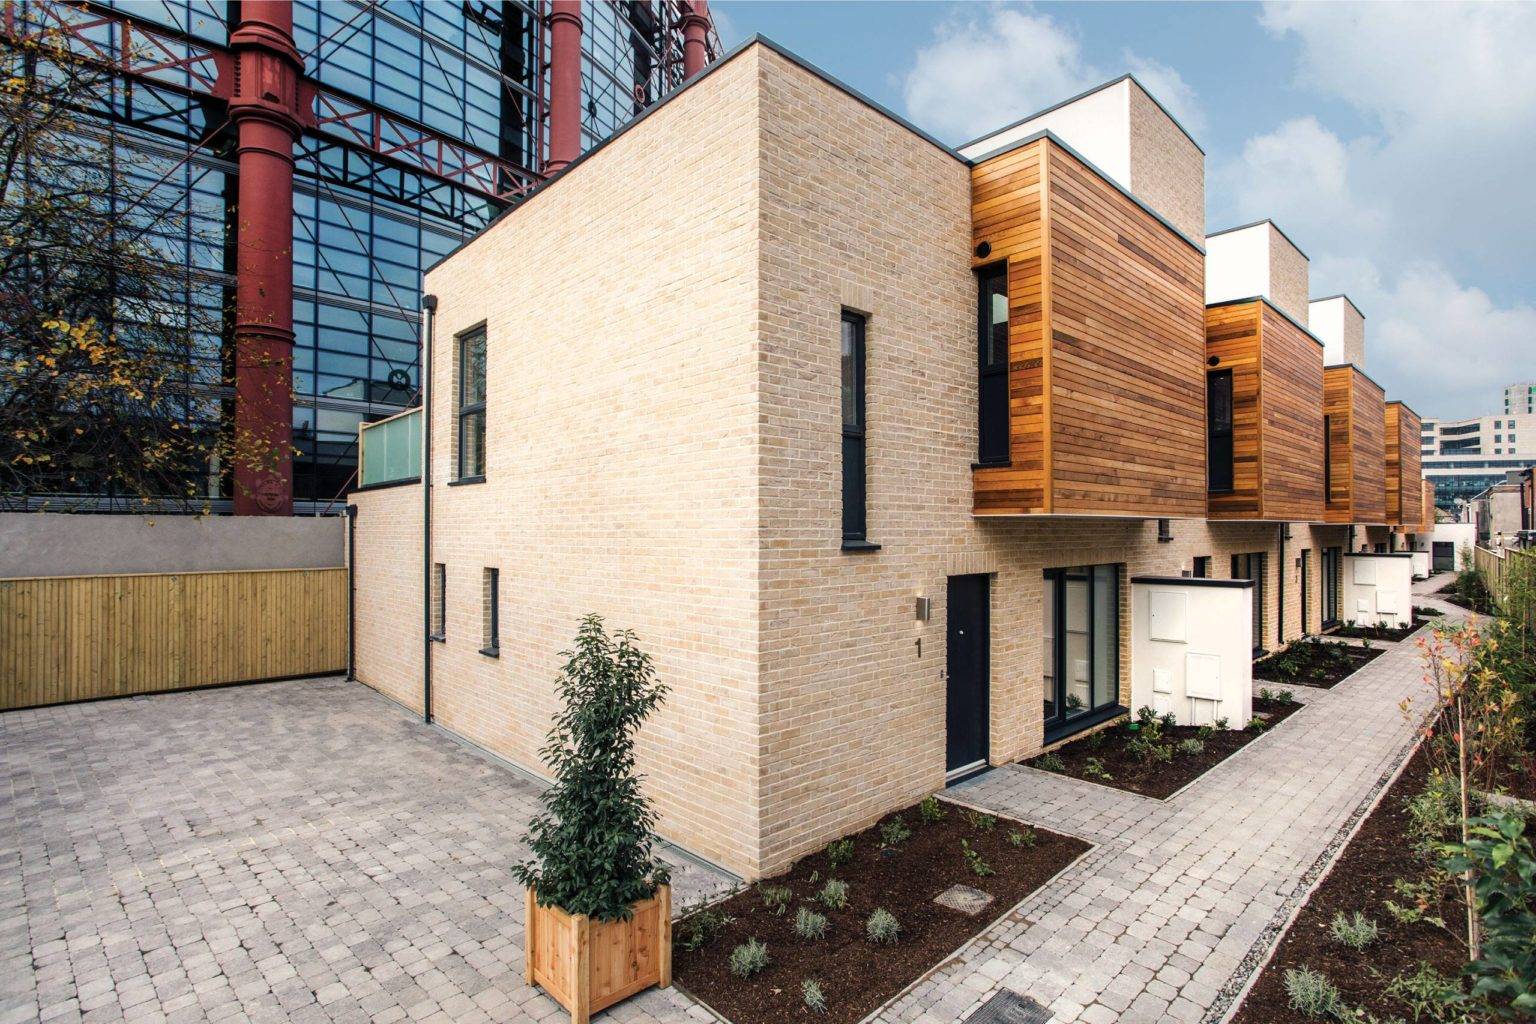 New Dublin Homes Dublin Housing Development Advisers Owen Reilly